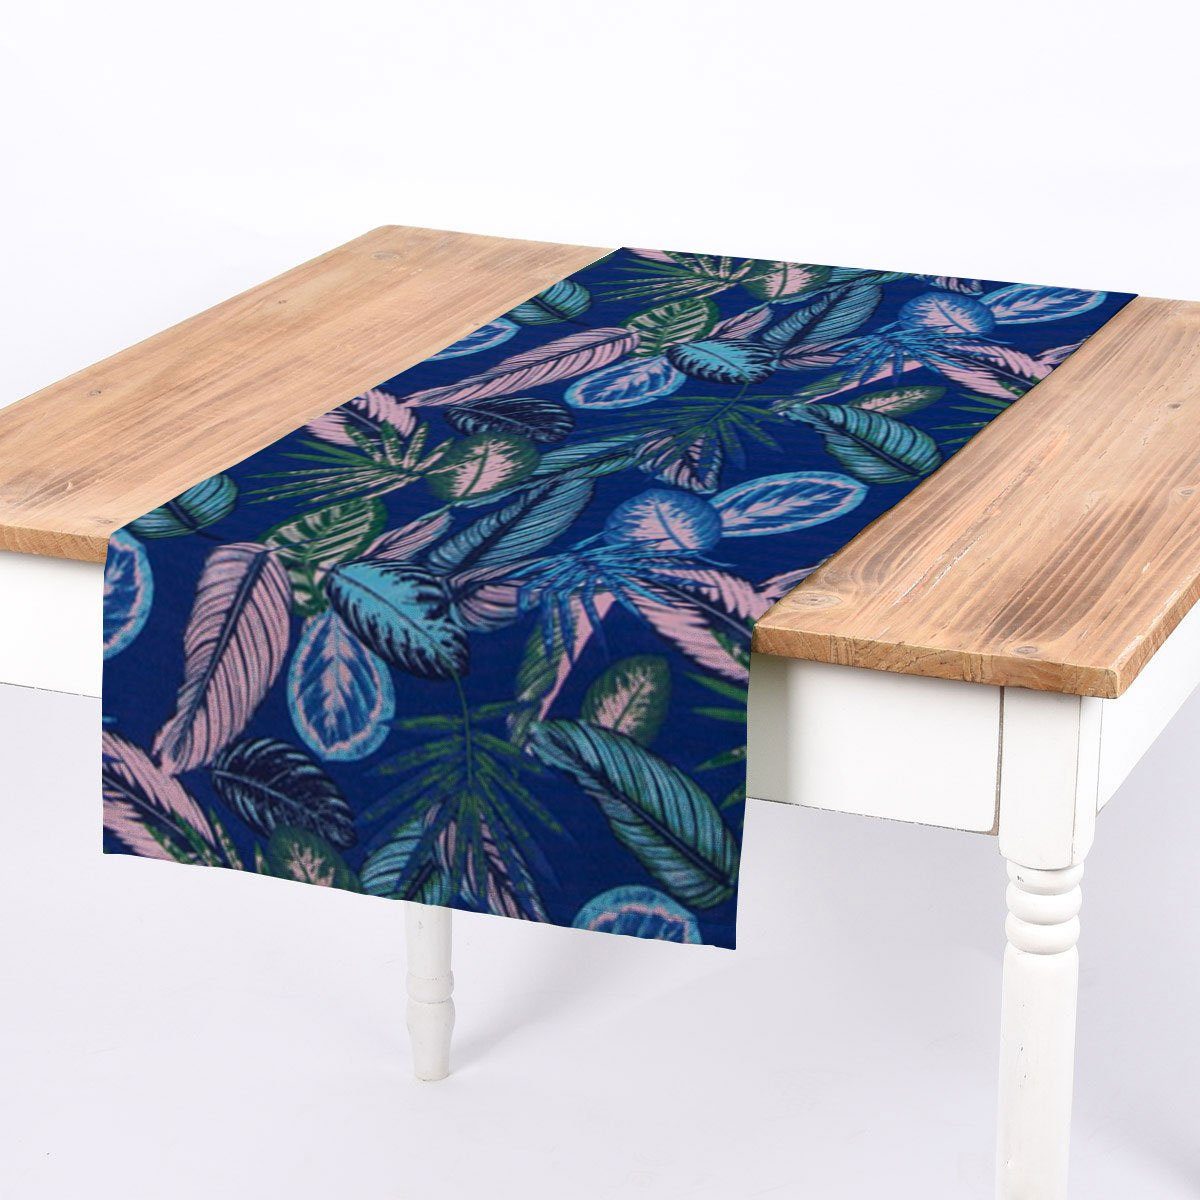 SCHÖNER LEBEN. Tischläufer SCHÖNER LEBEN. Tischläufer Dschungelpflanzen blau grün rosa 40x160cm, handmade